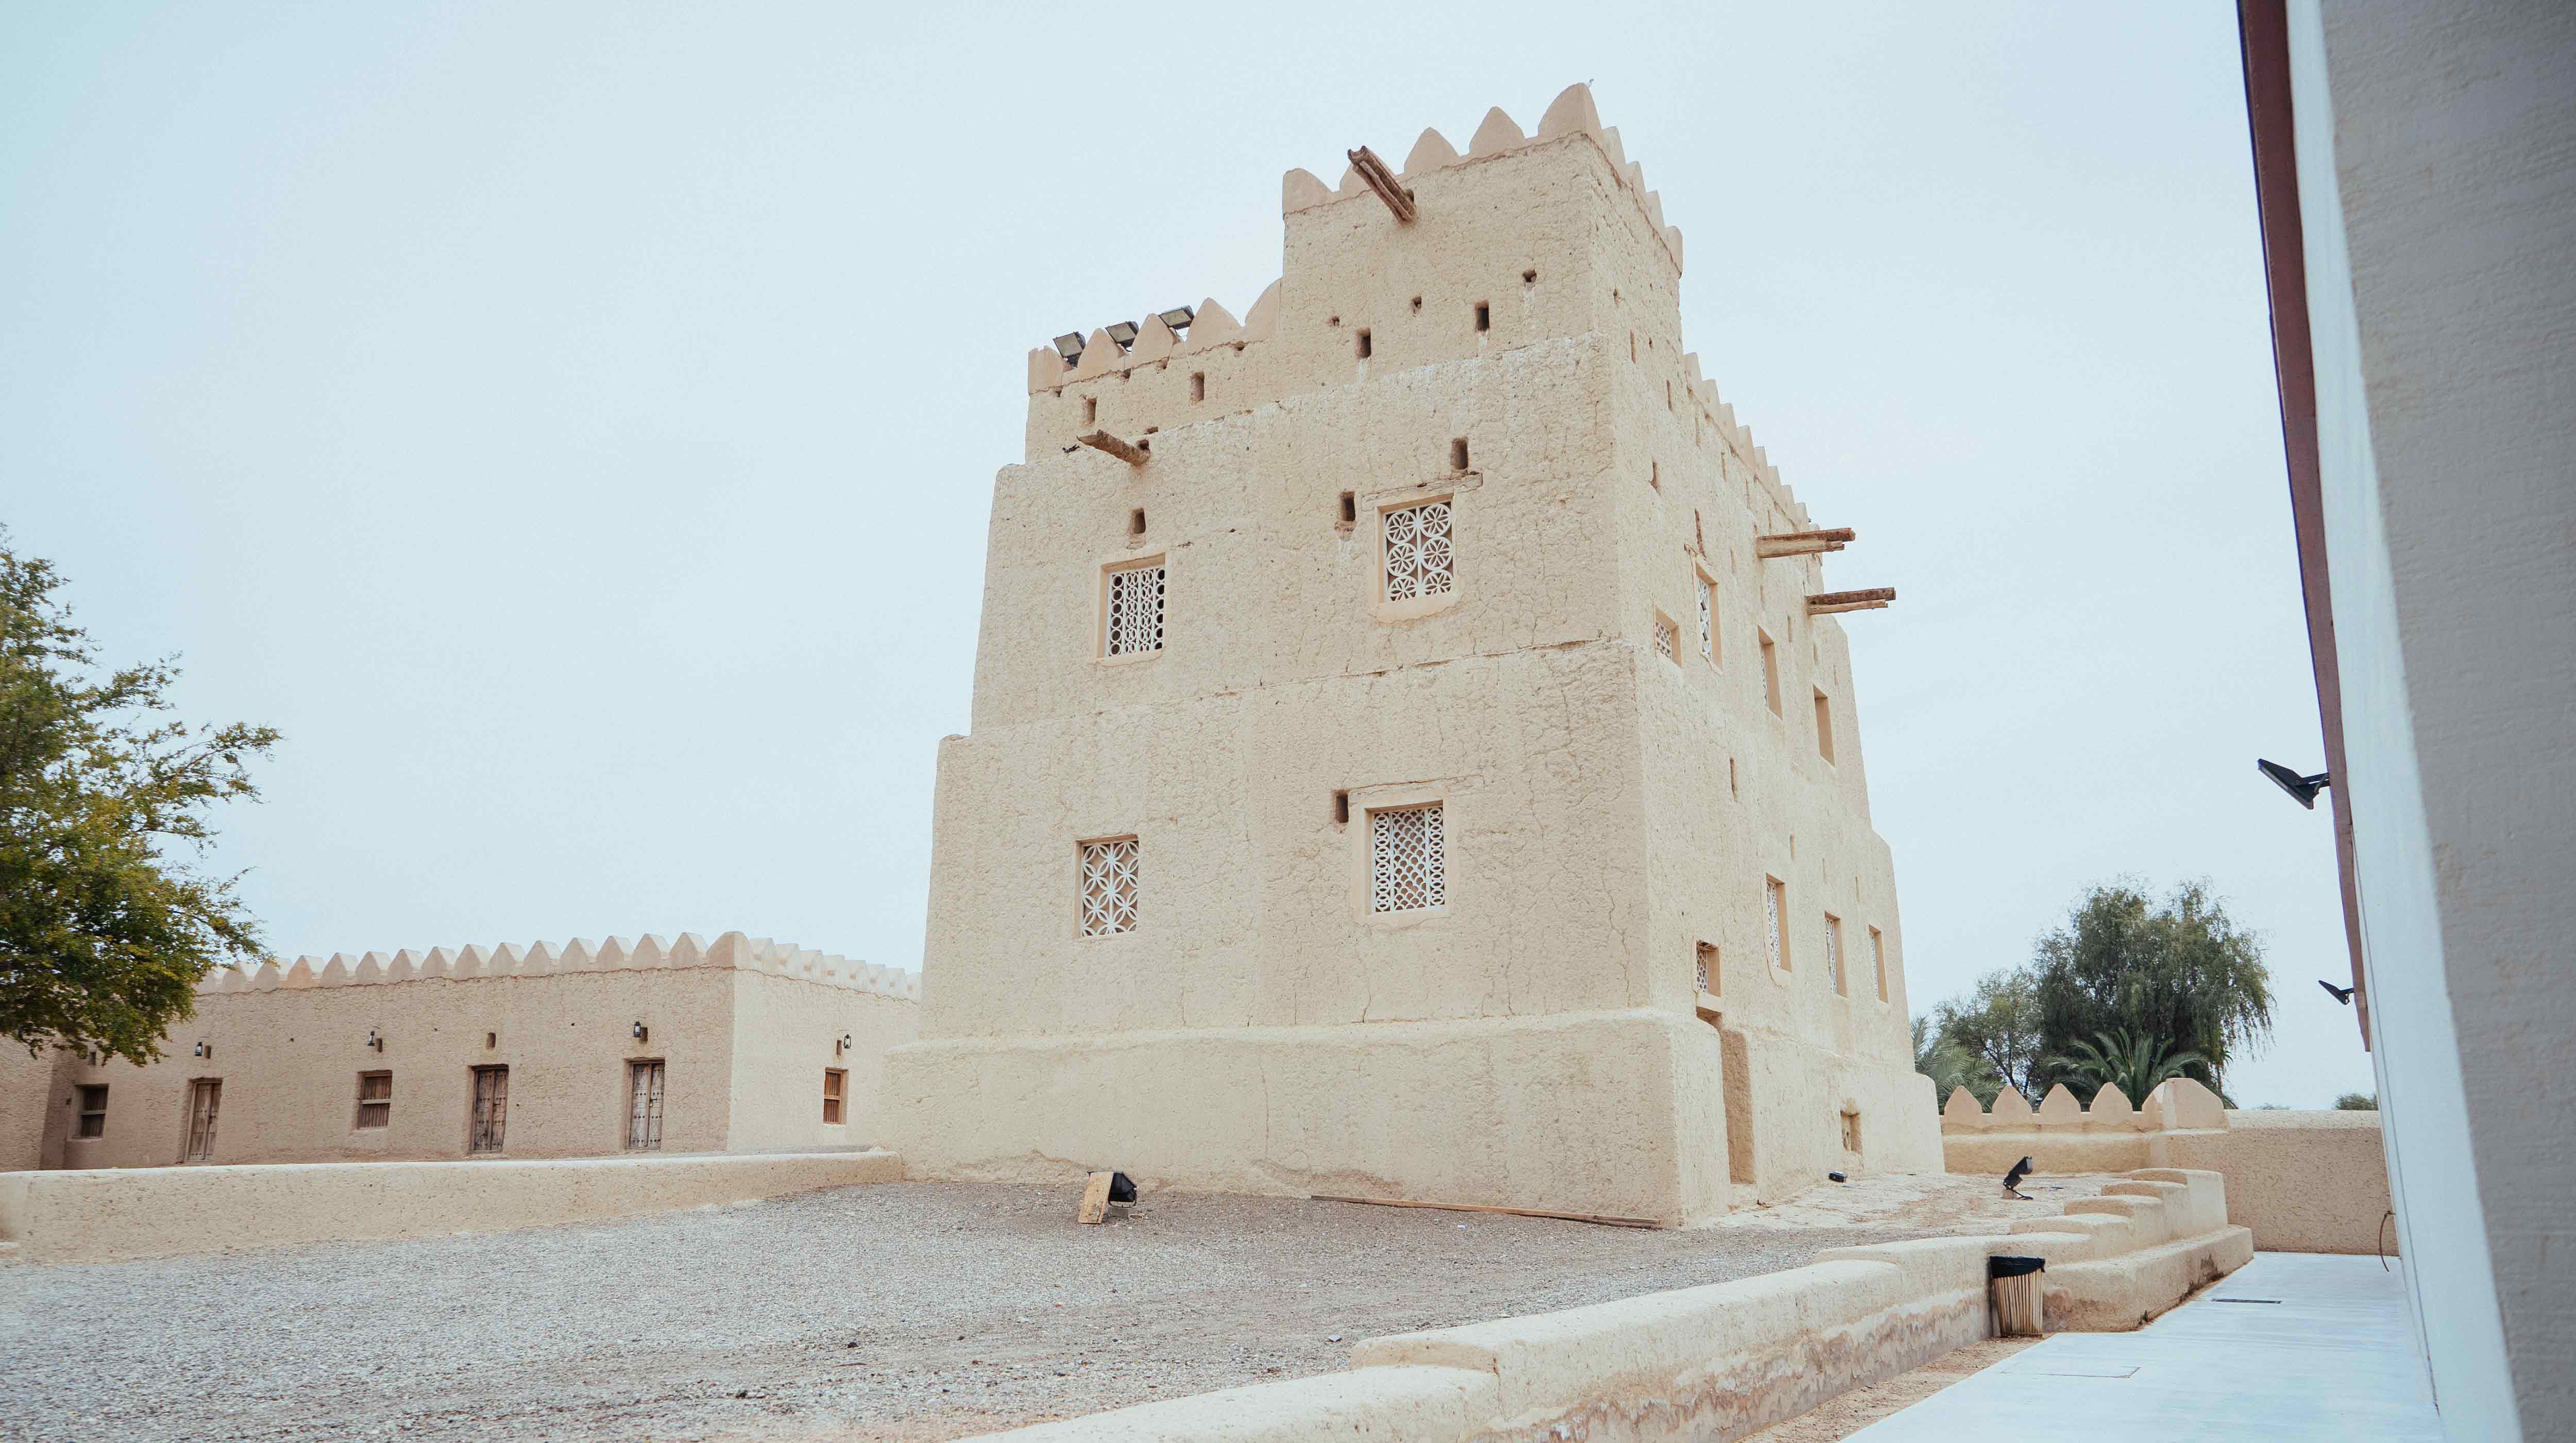 Al Qattara Arts Centre